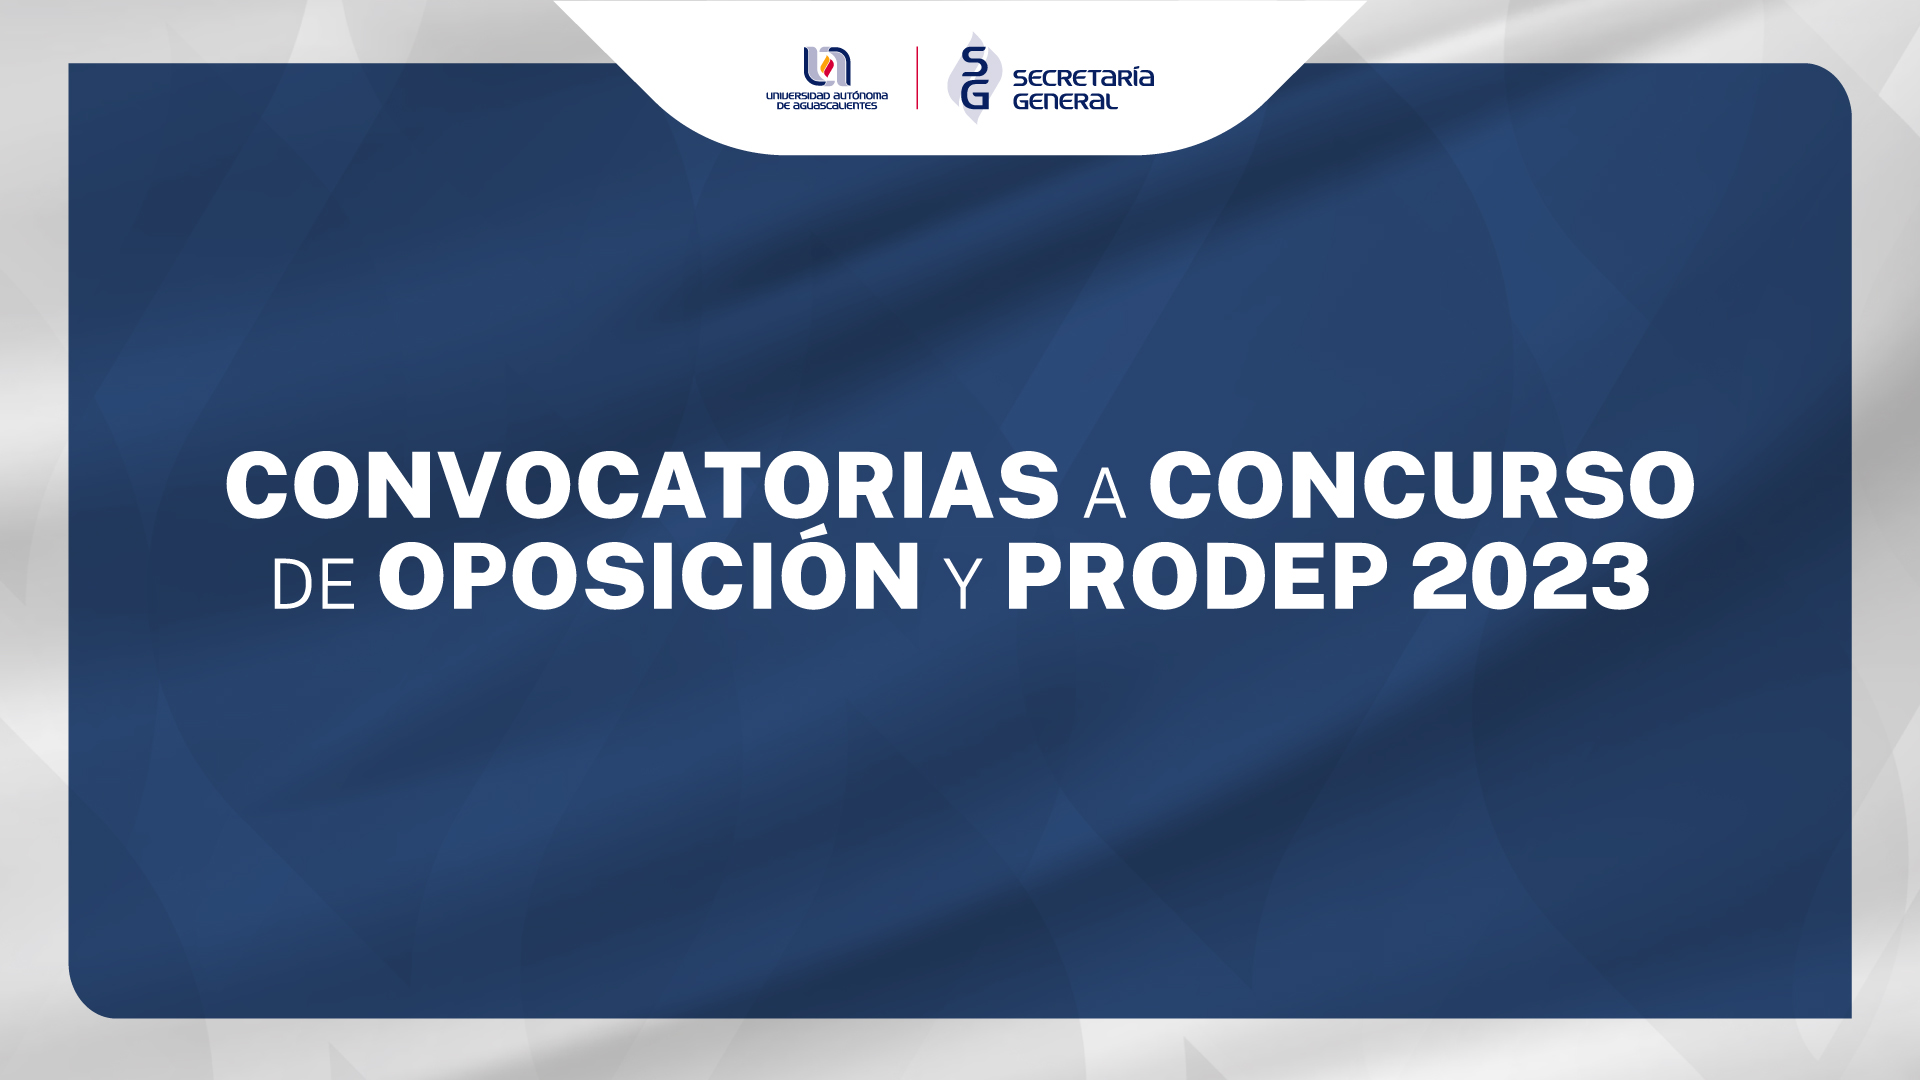 CONCURSOS DE OPOSICIÓN Y PRODEP 2023